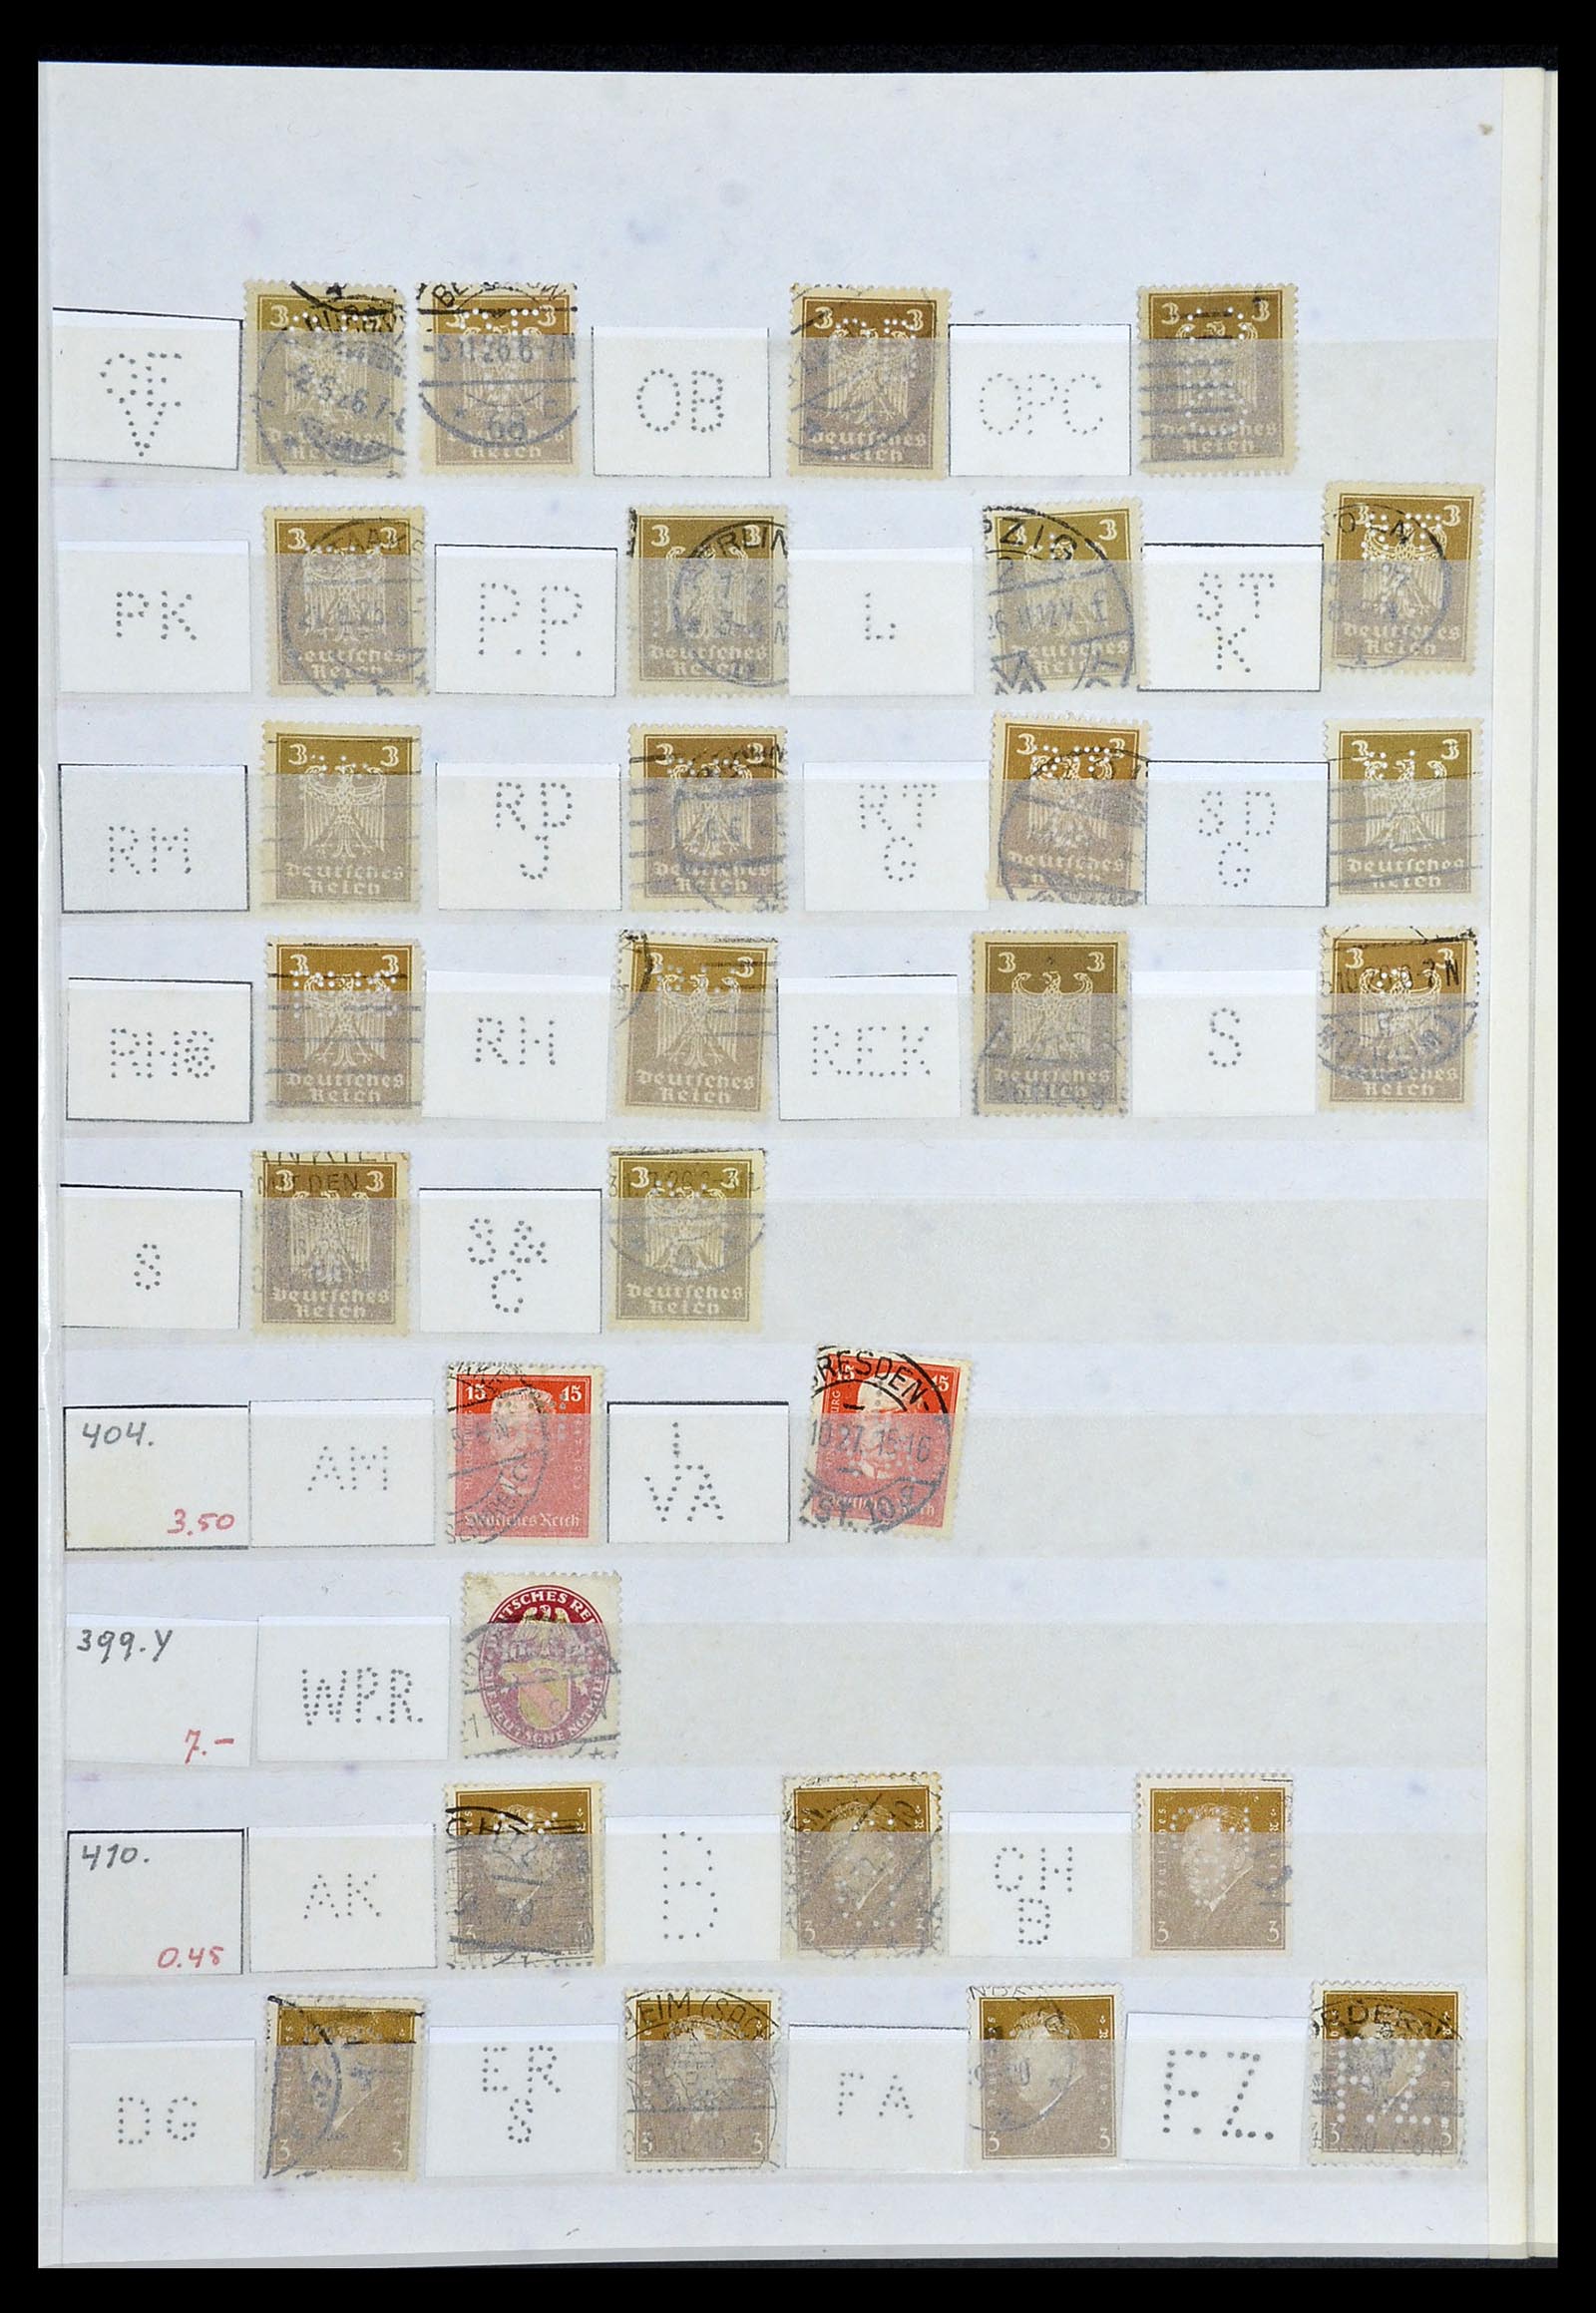 34071 015 - Stamp collection 34071 German Reich perfins 1923-1930.